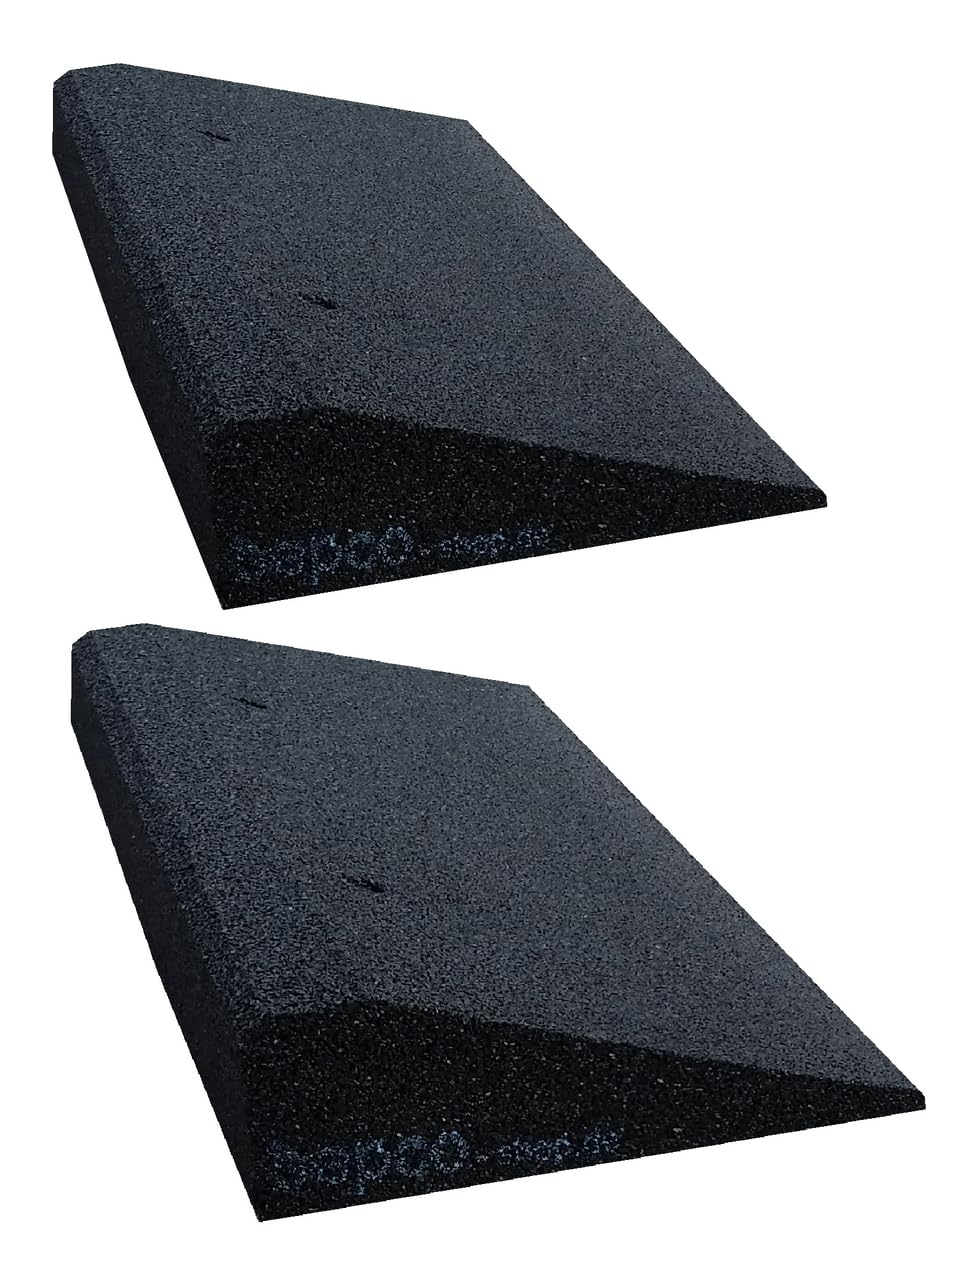 bepco Bordsteinkanten-Rampe-Set (2 Stück) LxBxH: 50 x 25 x 5 cm aus Gummi (schwarz) Auffahrrampe,Türschwellenrampe, mit eingelagerten Unterlegscheiben zur Befestigung